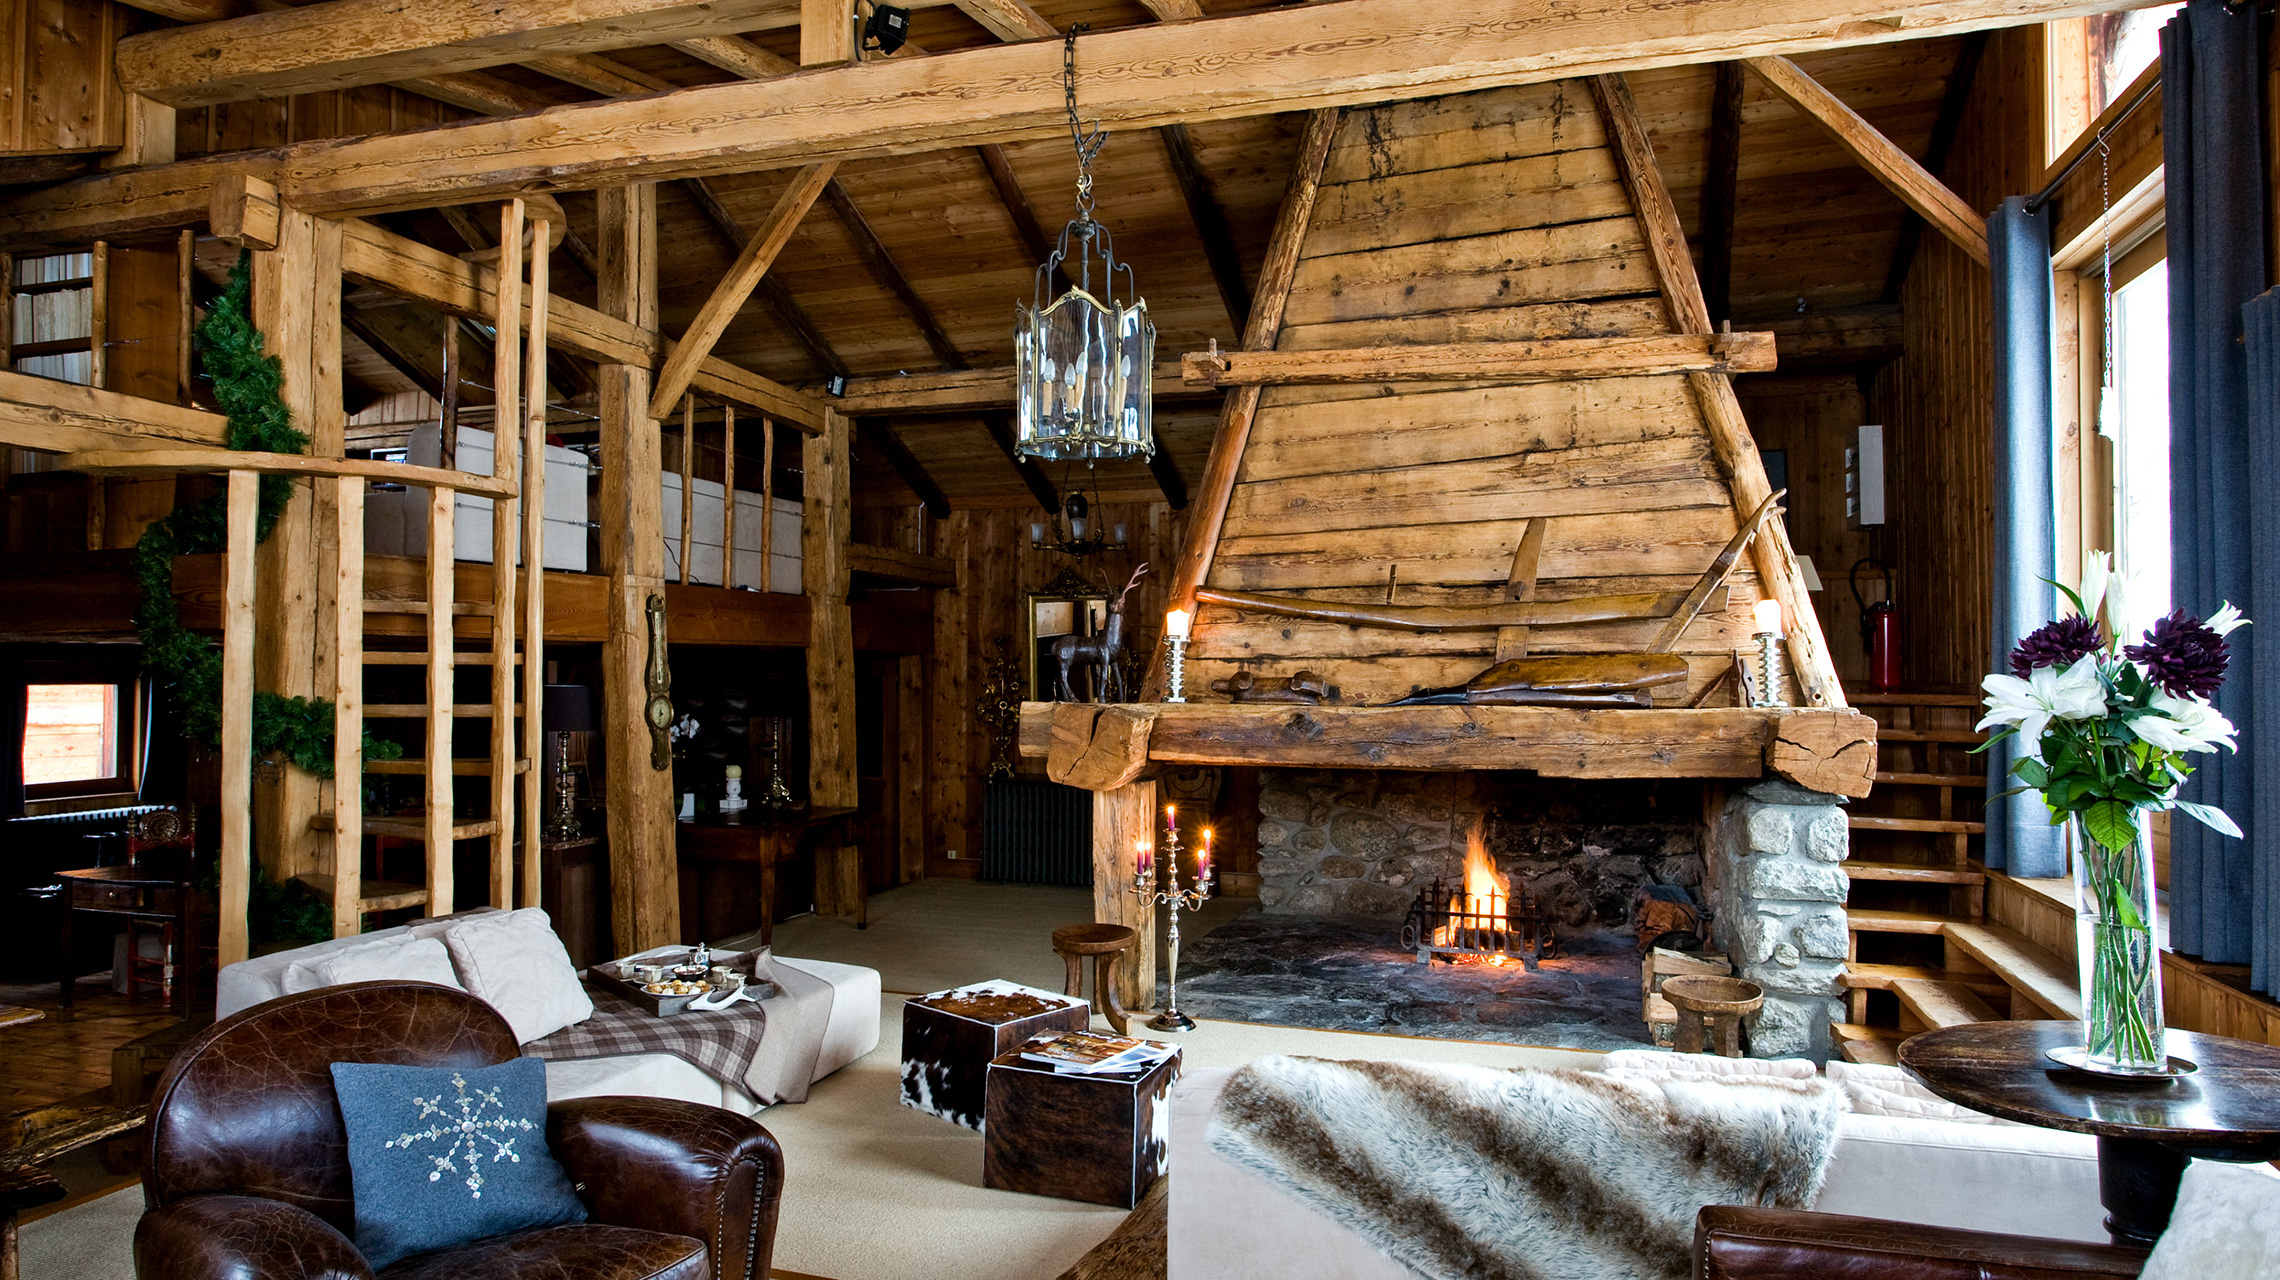 Интерьер дома в стиле Шале: Как создать альпийскую сказку? 210+ Фото дизайна изнутри и снаружи